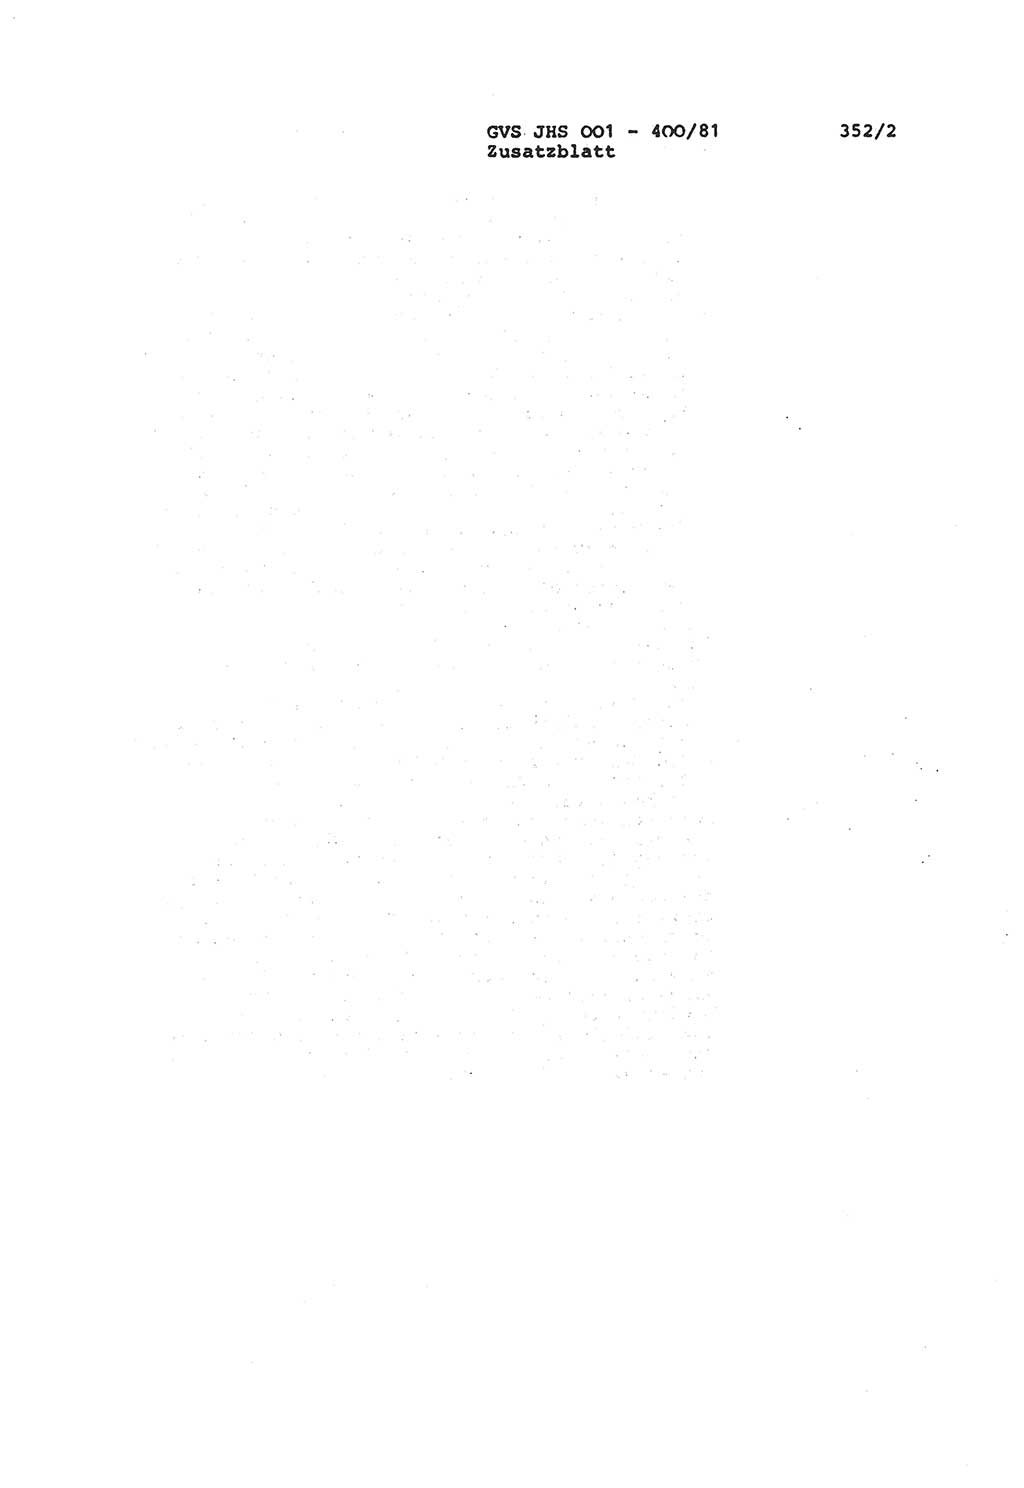 Wörterbuch der politisch-operativen Arbeit, Ministerium für Staatssicherheit (MfS) [Deutsche Demokratische Republik (DDR)], Juristische Hochschule (JHS), Geheime Verschlußsache (GVS) o001-400/81, Potsdam 1985, Blatt 352/2 (Wb. pol.-op. Arb. MfS DDR JHS GVS o001-400/81 1985, Bl. 352/2)